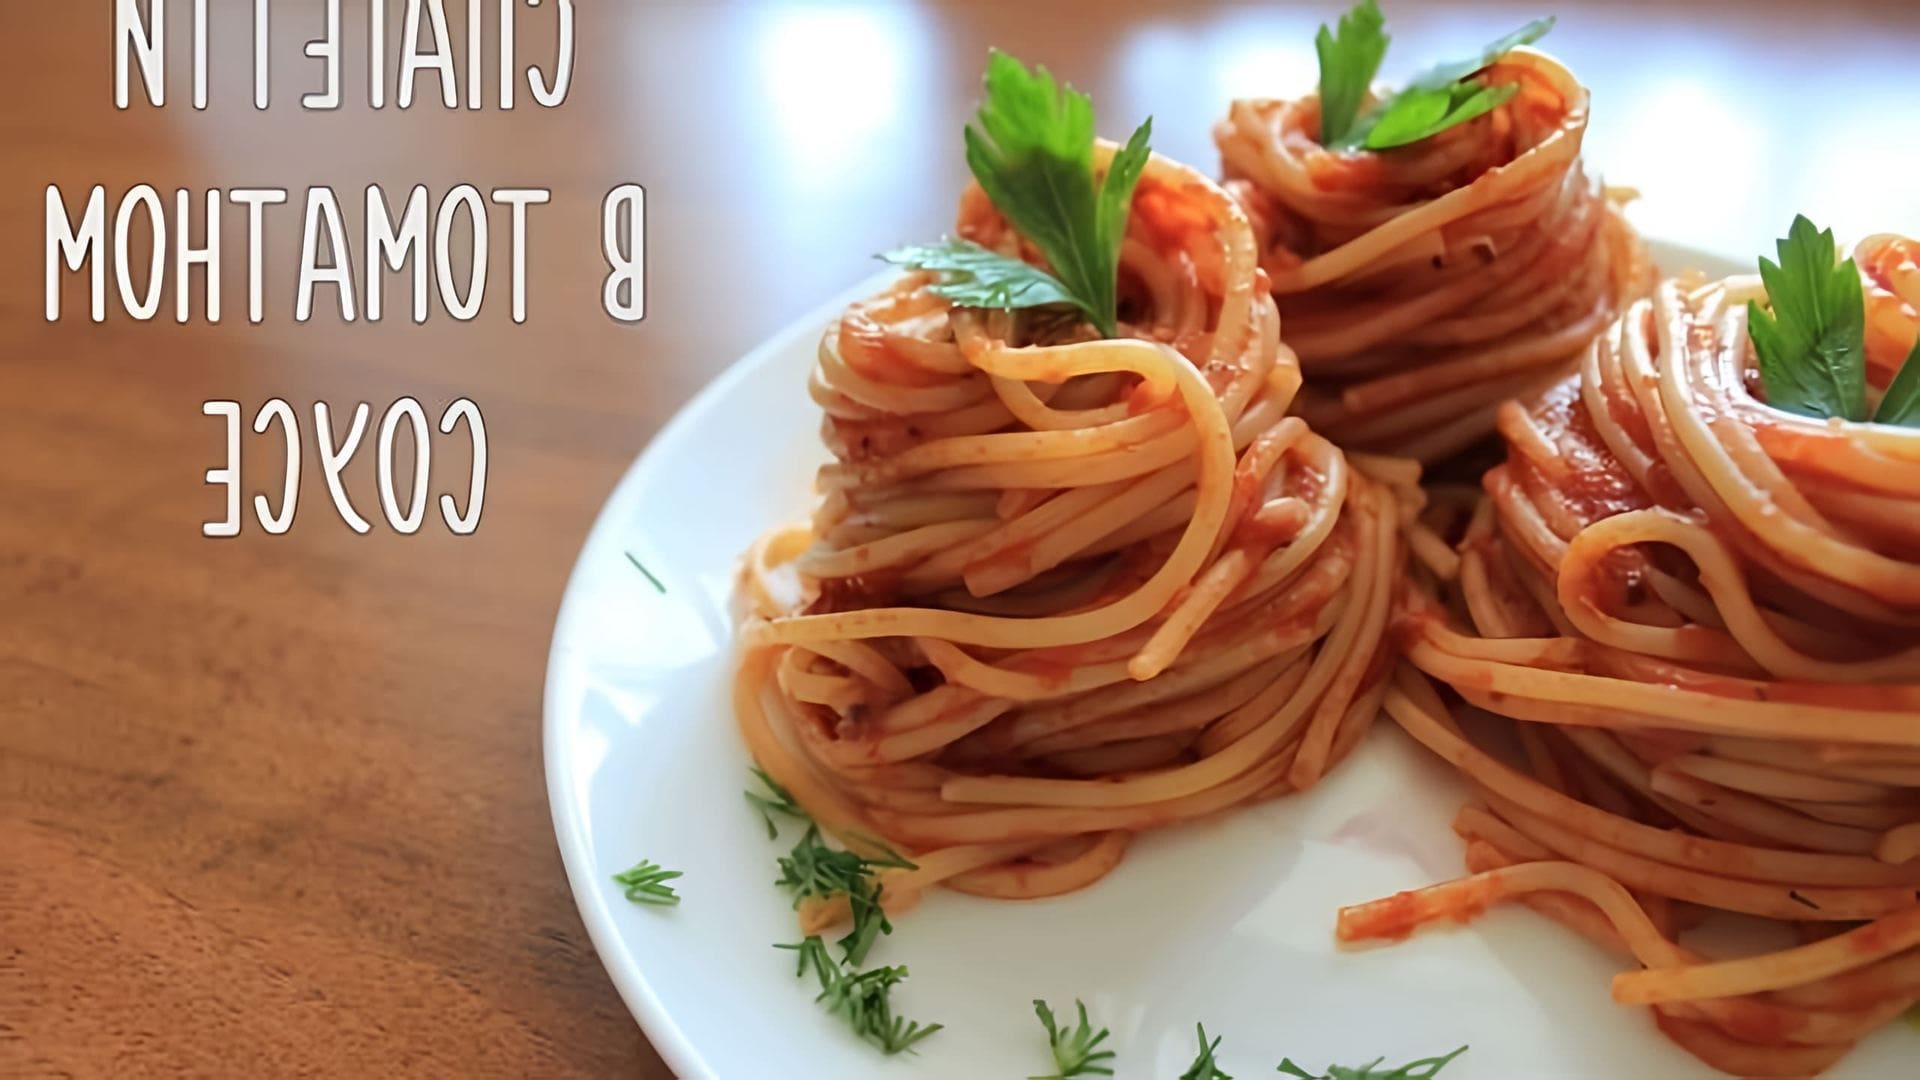 В этом видео демонстрируется процесс приготовления вкусных спагетти в томатном соусе